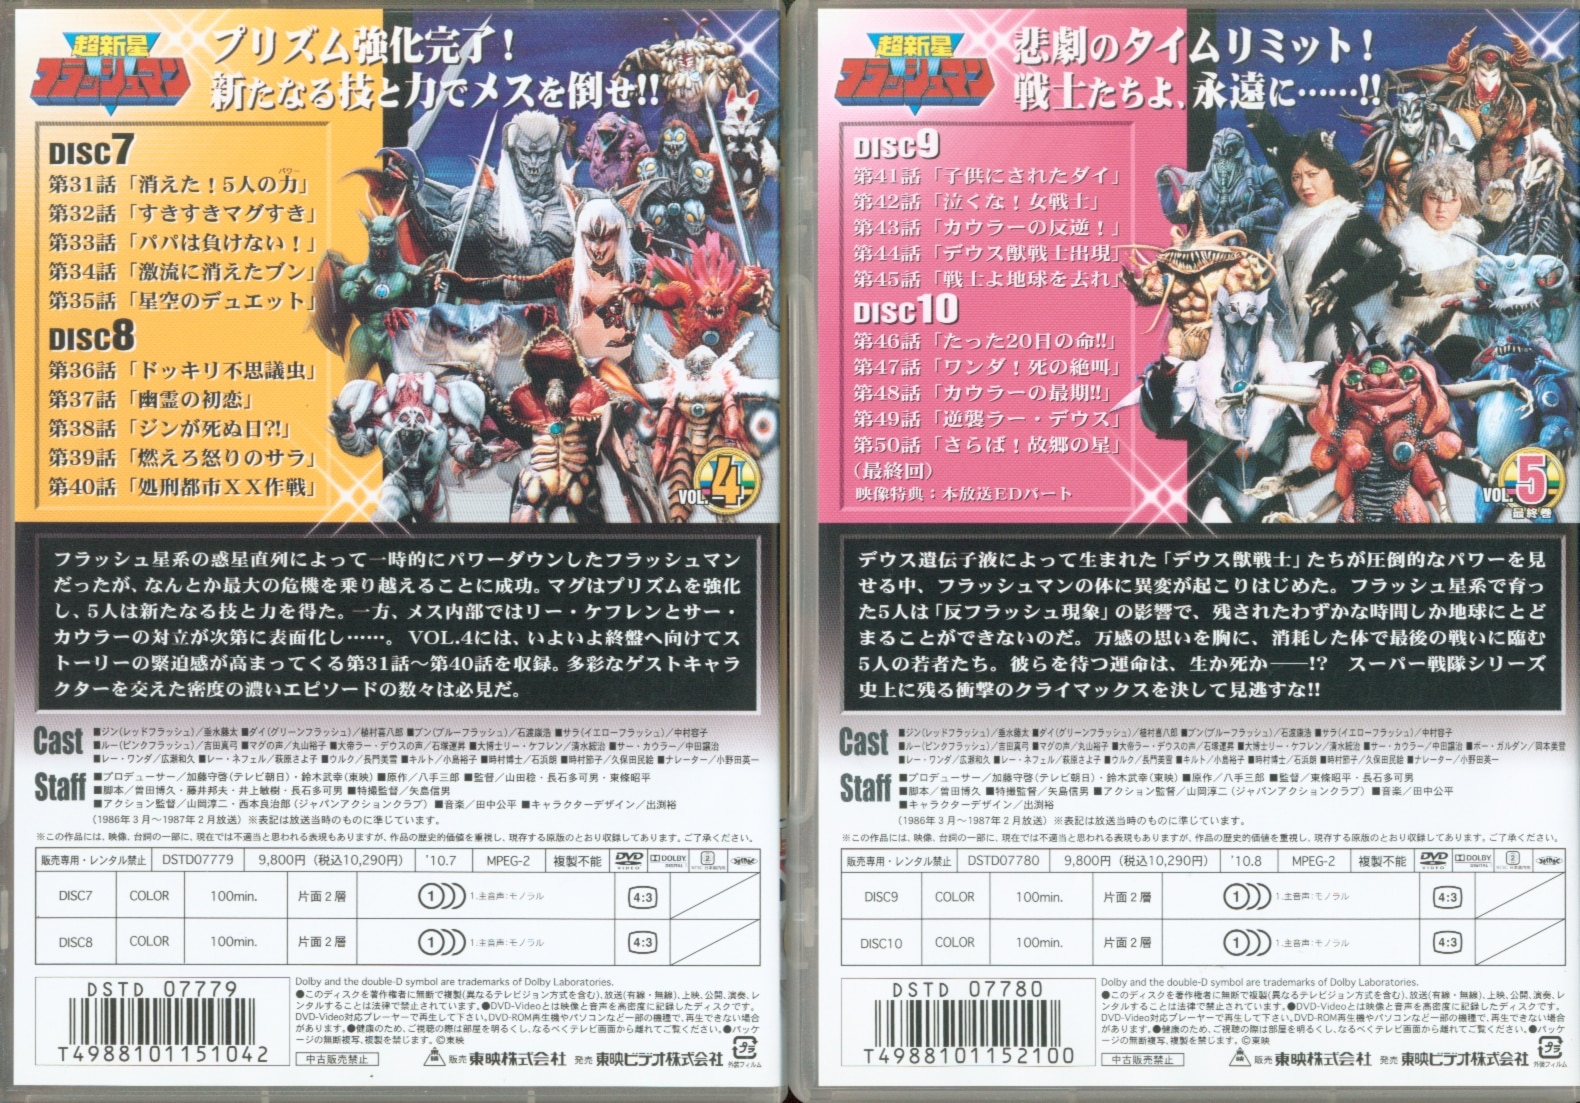 超新星フラッシュマン DVD 全10.巻 ☆植村喜八郎+spbgp44.ru